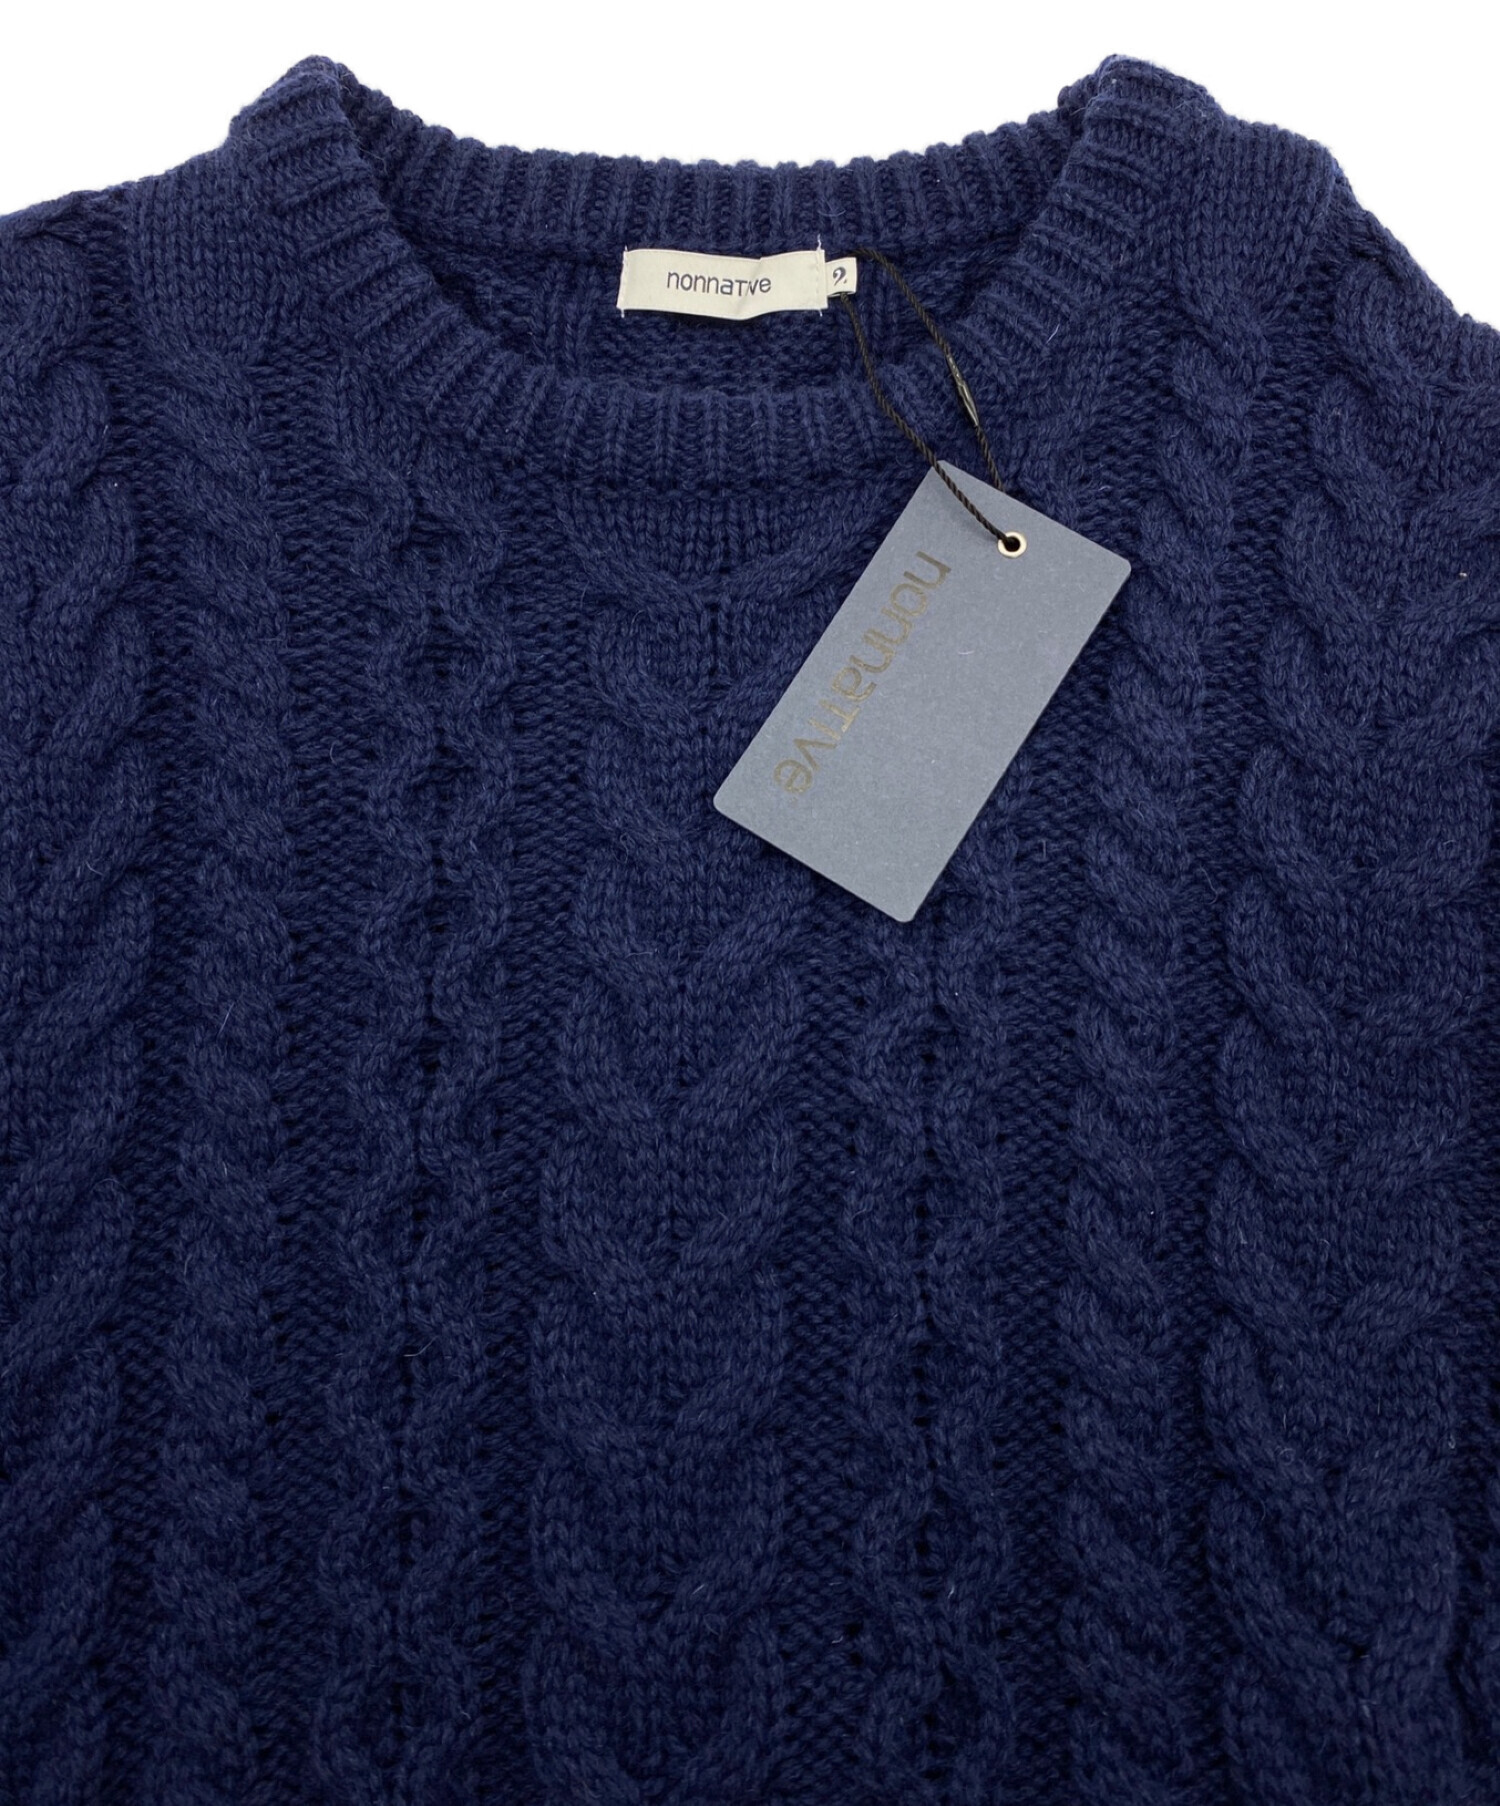 Nonnative Sweater 2 ノンネイティブ ニット セーター身幅53cm